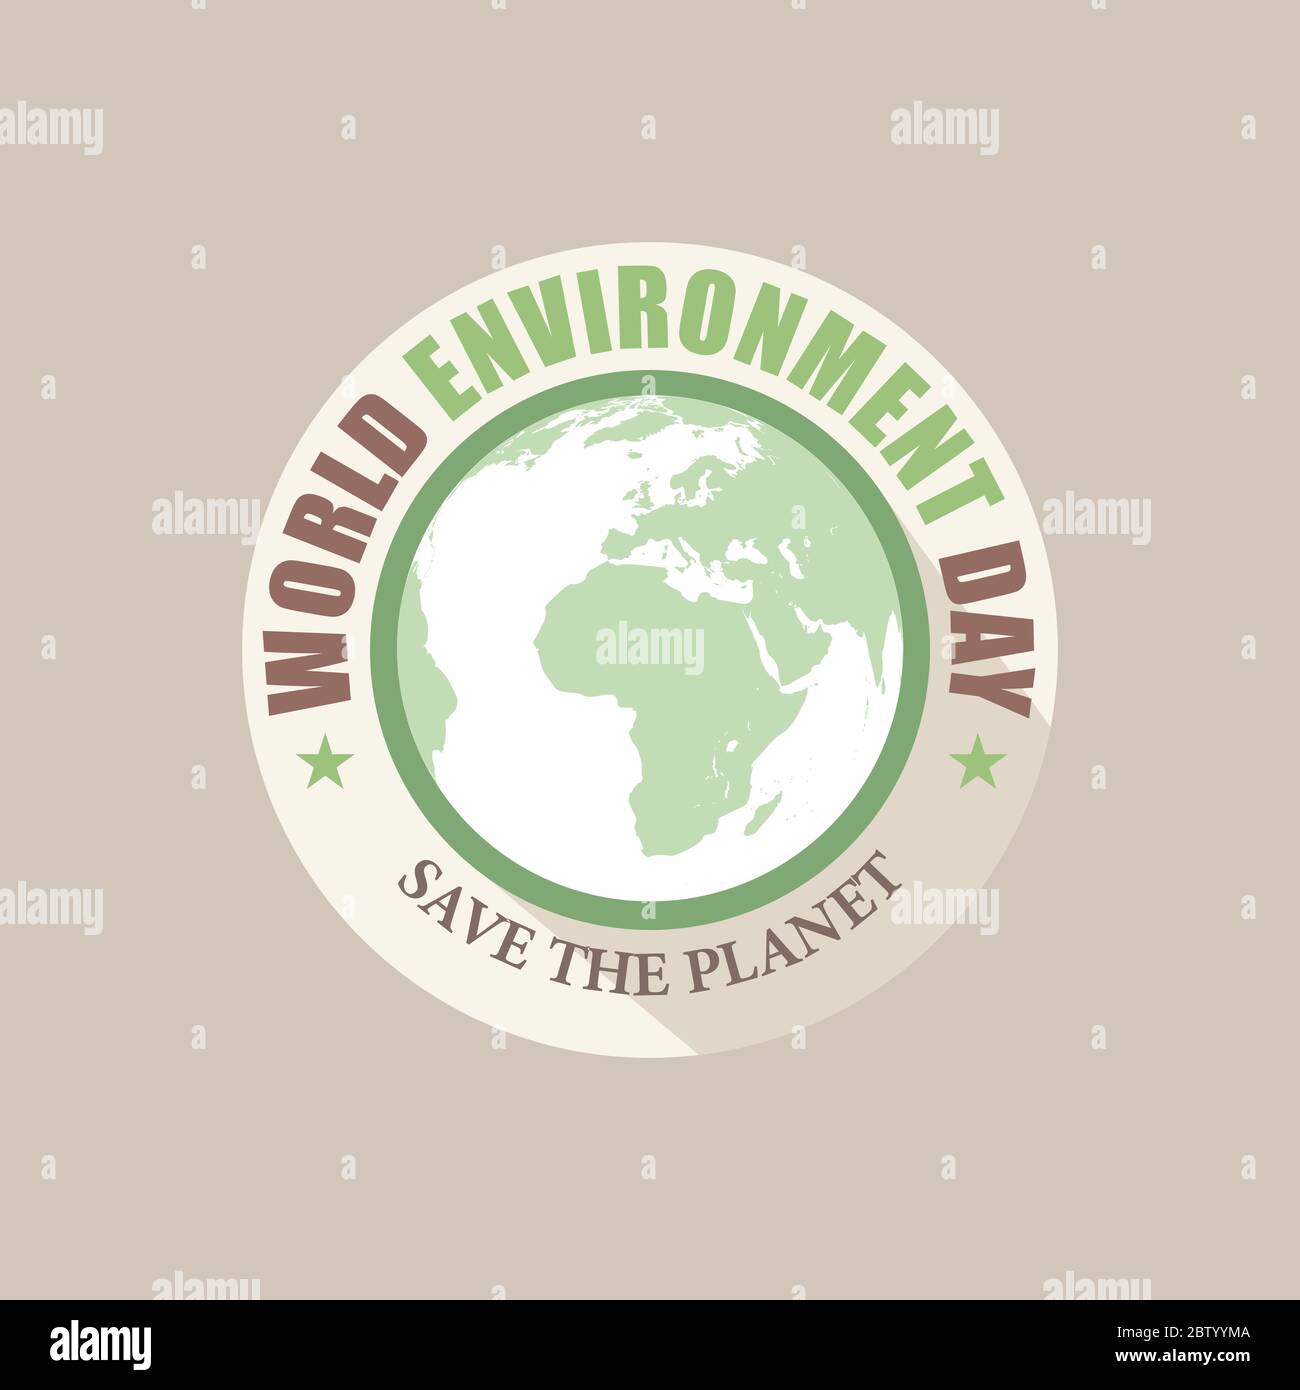 illustration vectorielle créative de la conception de la bannière de la journée mondiale de l'environnement Illustration de Vecteur